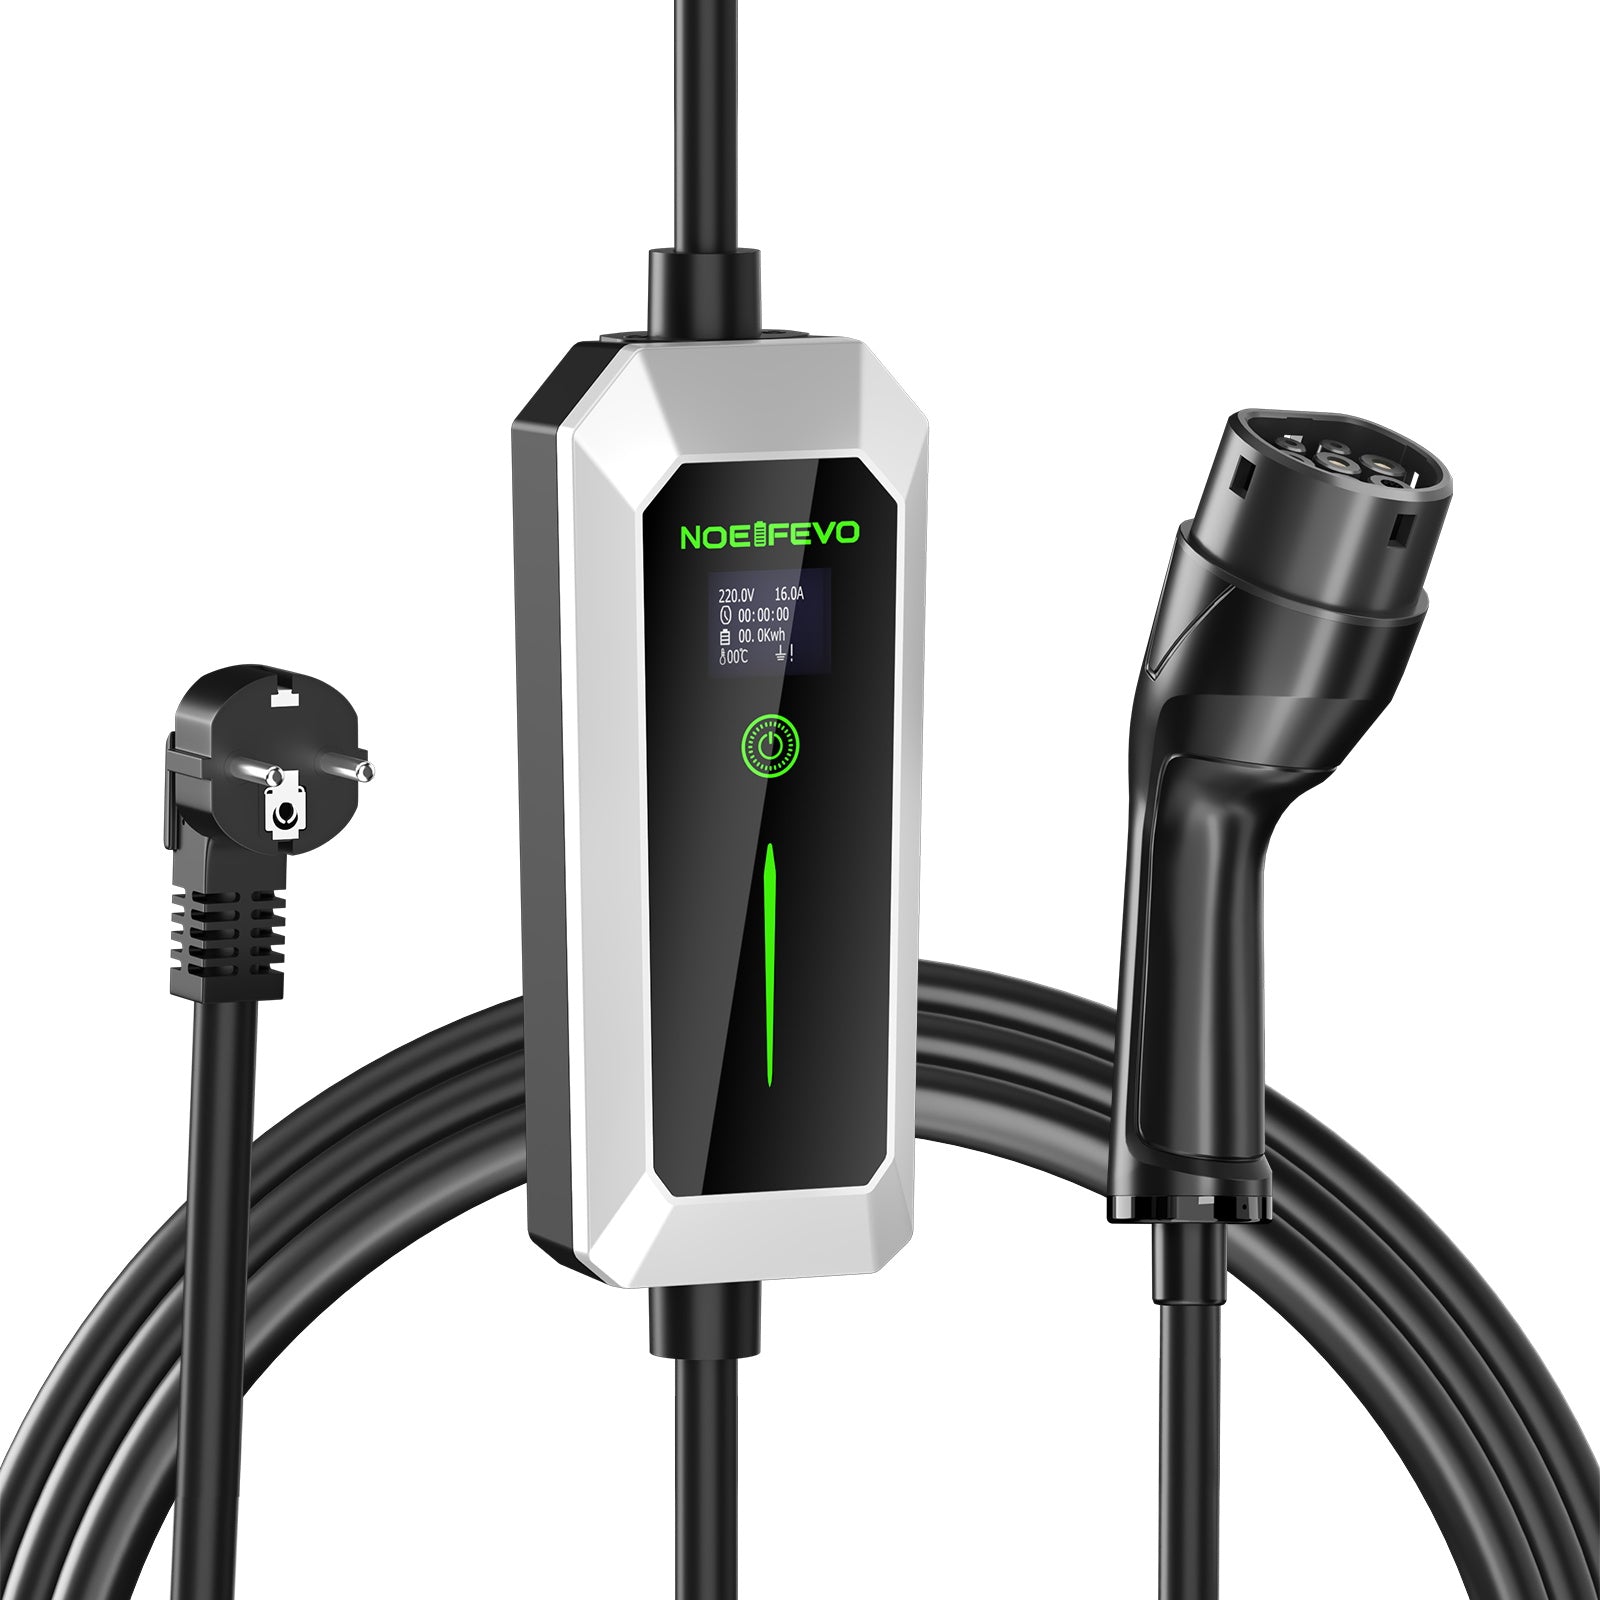 NOEIFEVO Typ 2 3.5 kW EV-Ladegerät, mobiles EV-Ladekabel mit Schuko, 5 –  Smart LifePO4 Batterie & Heimspeicherung von Energie & Intelligentes  Ladegerät